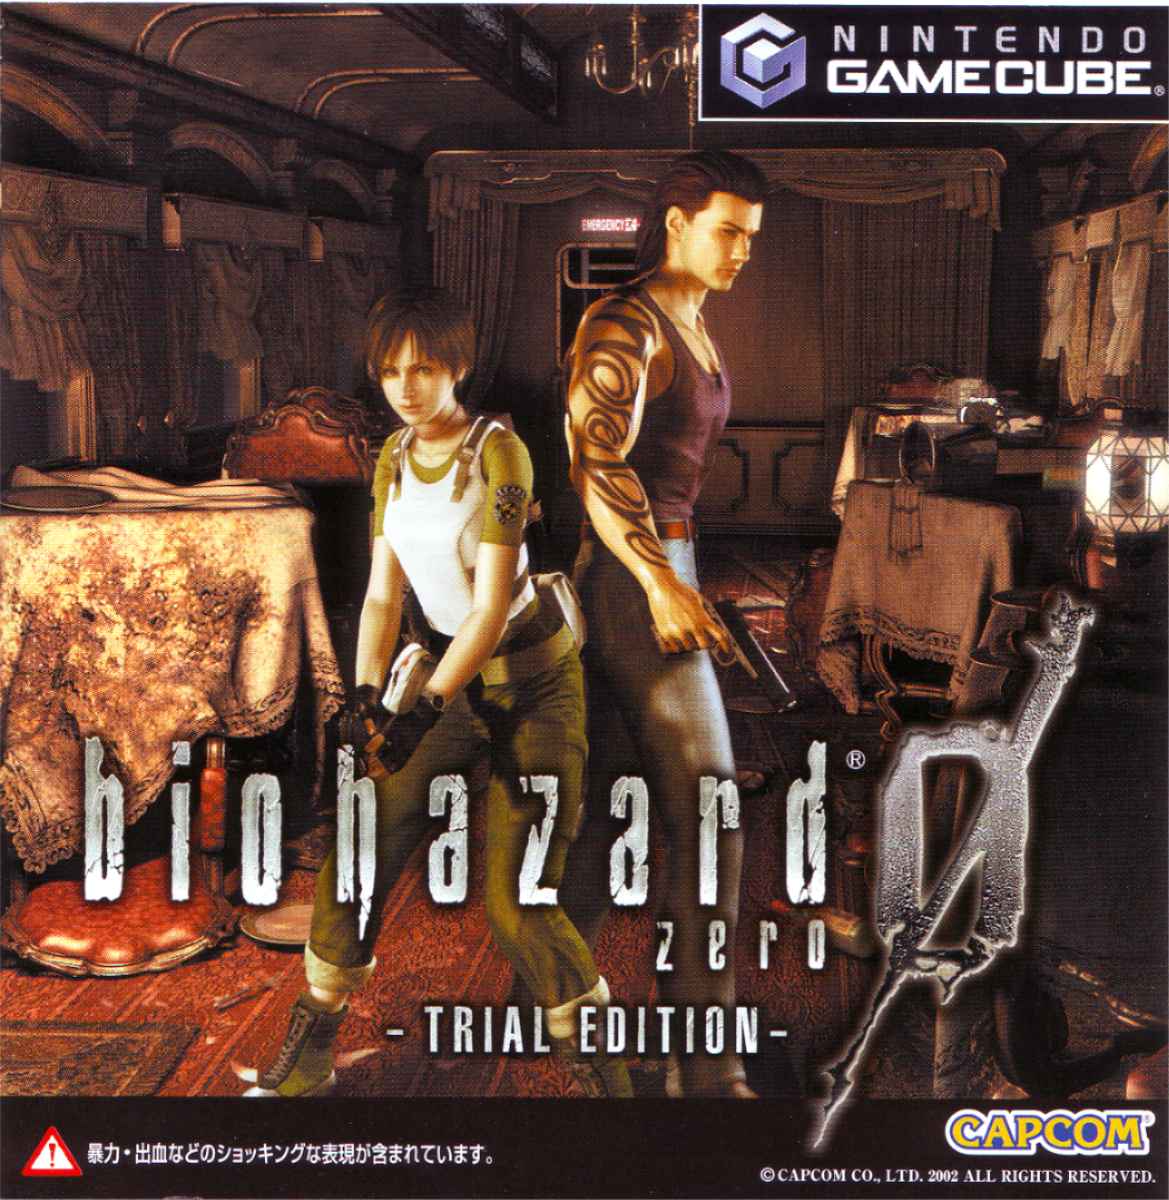 バイオハザード0 / Biohazard 0 / Biohazard Zero / Resident Evil 0 / Resident Evil Zero